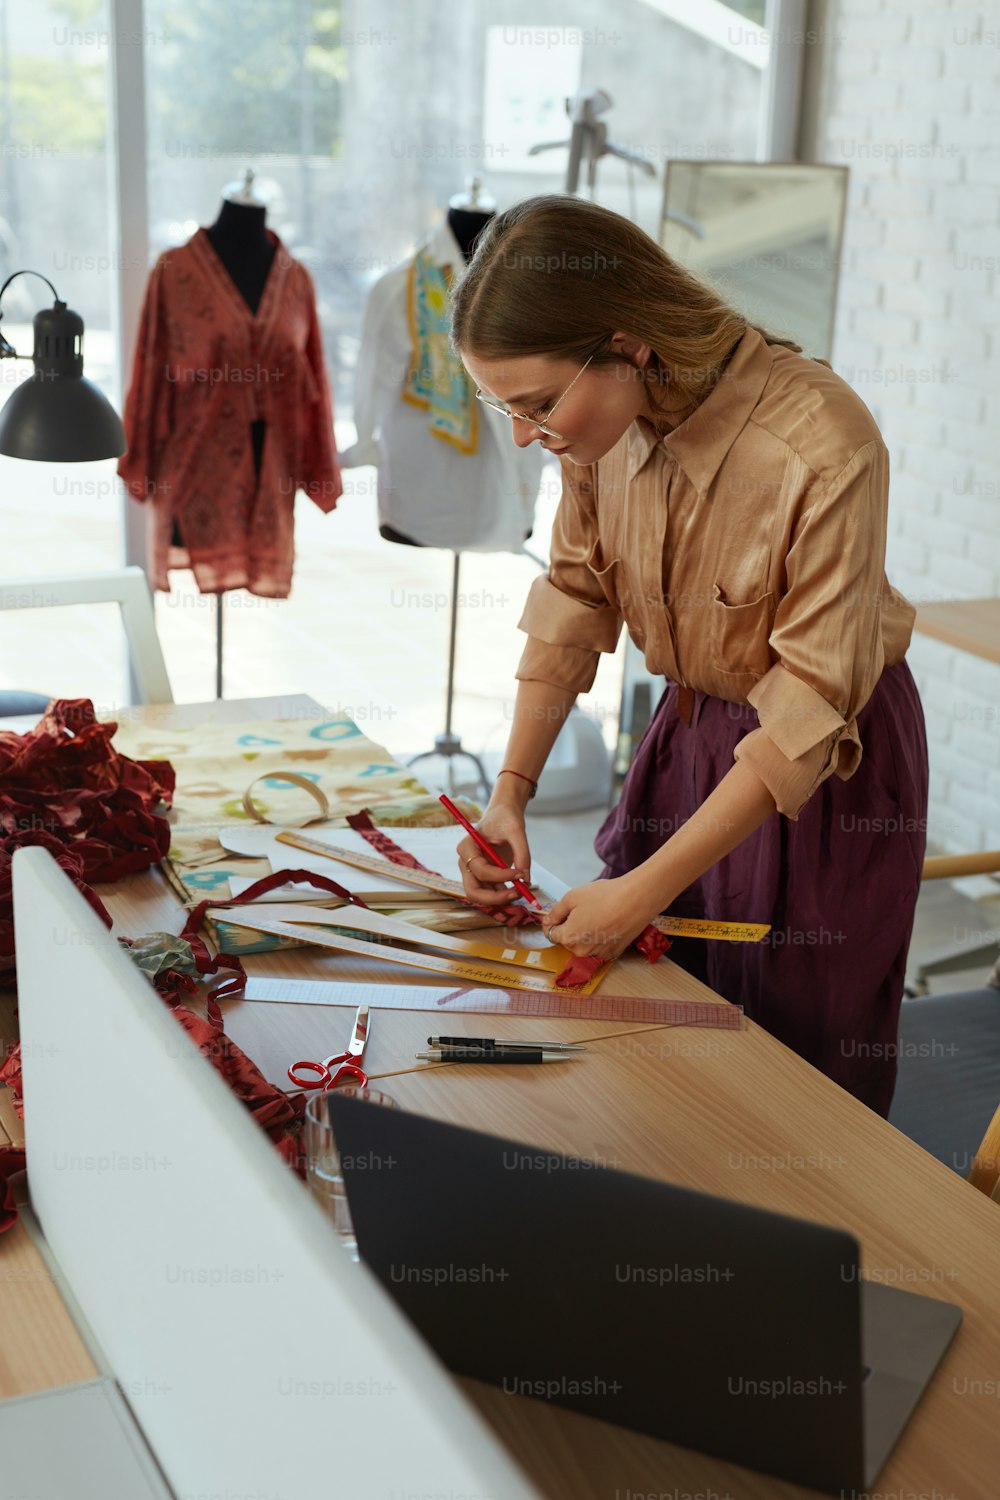 Arbeit. Modedesigner bei Atelier. Erfolgreiche selbstständige Frau, die elegante Kleidung in der Werkstatt herstellt. Schöner Schneider Maßstoff für stilvolles Kleid. Kreativität Job für die Unternehmensgründung.